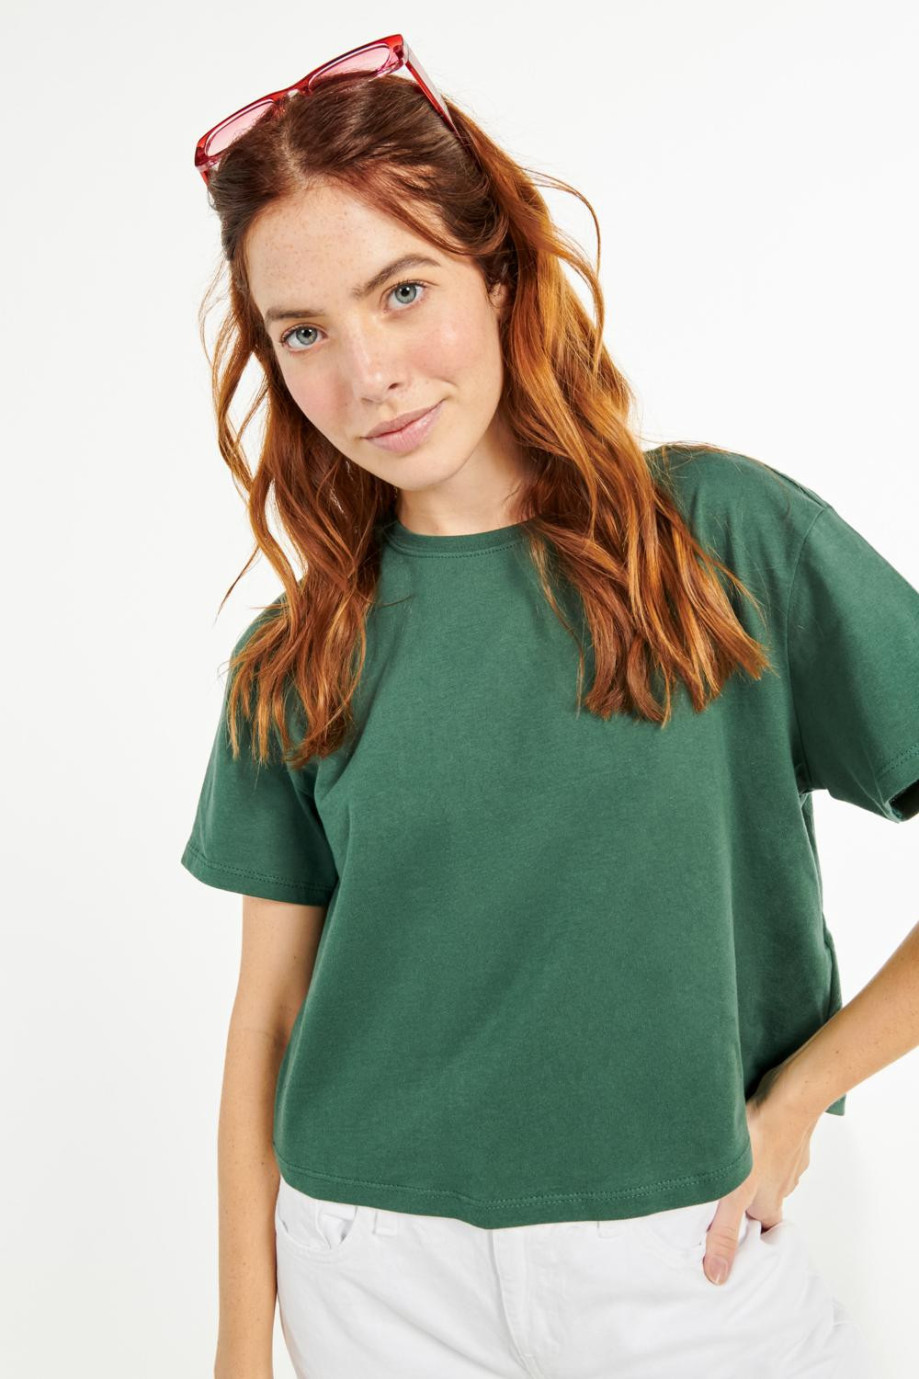 Camiseta crop top verde oscura con cuello redondo y mangas cortas